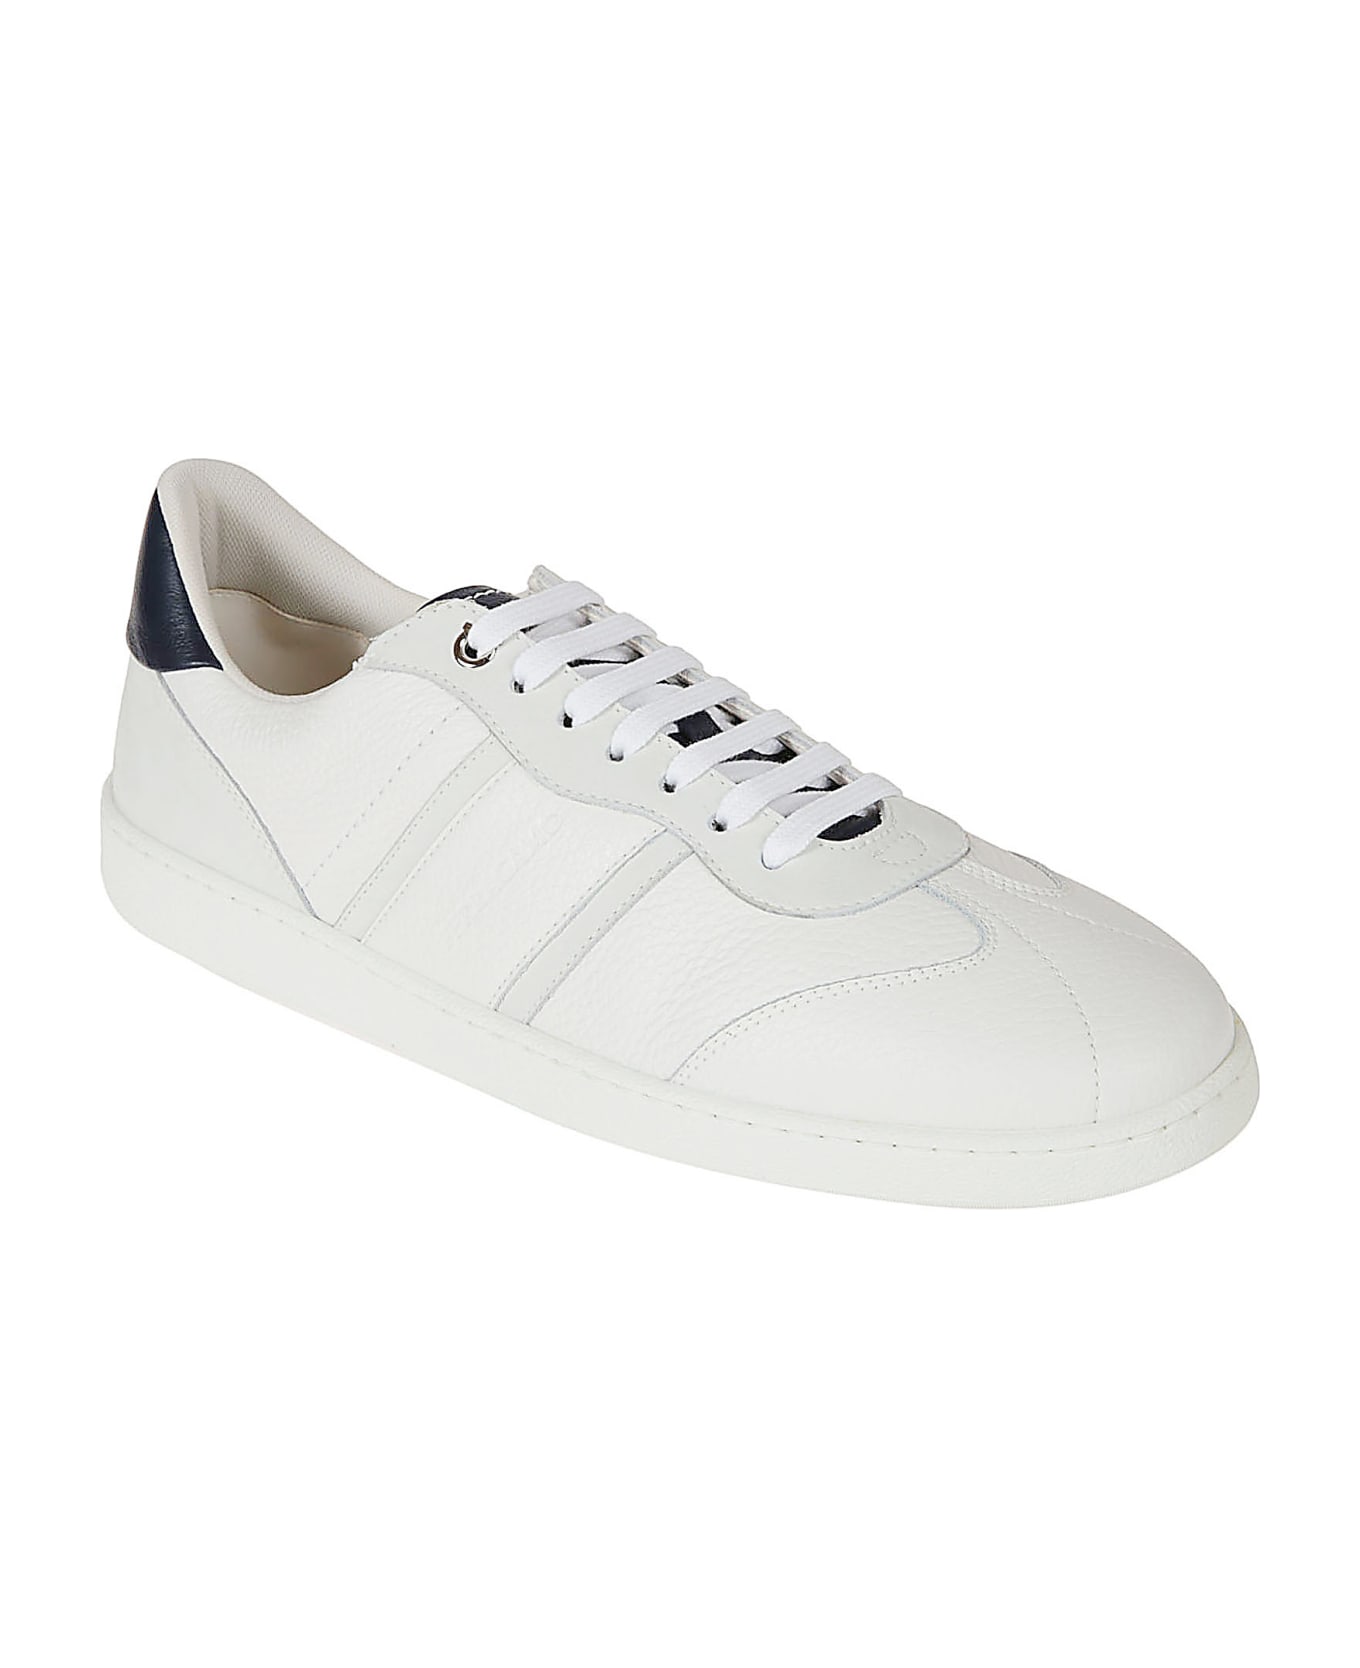 Ferragamo Achille 1 Sneakers - White